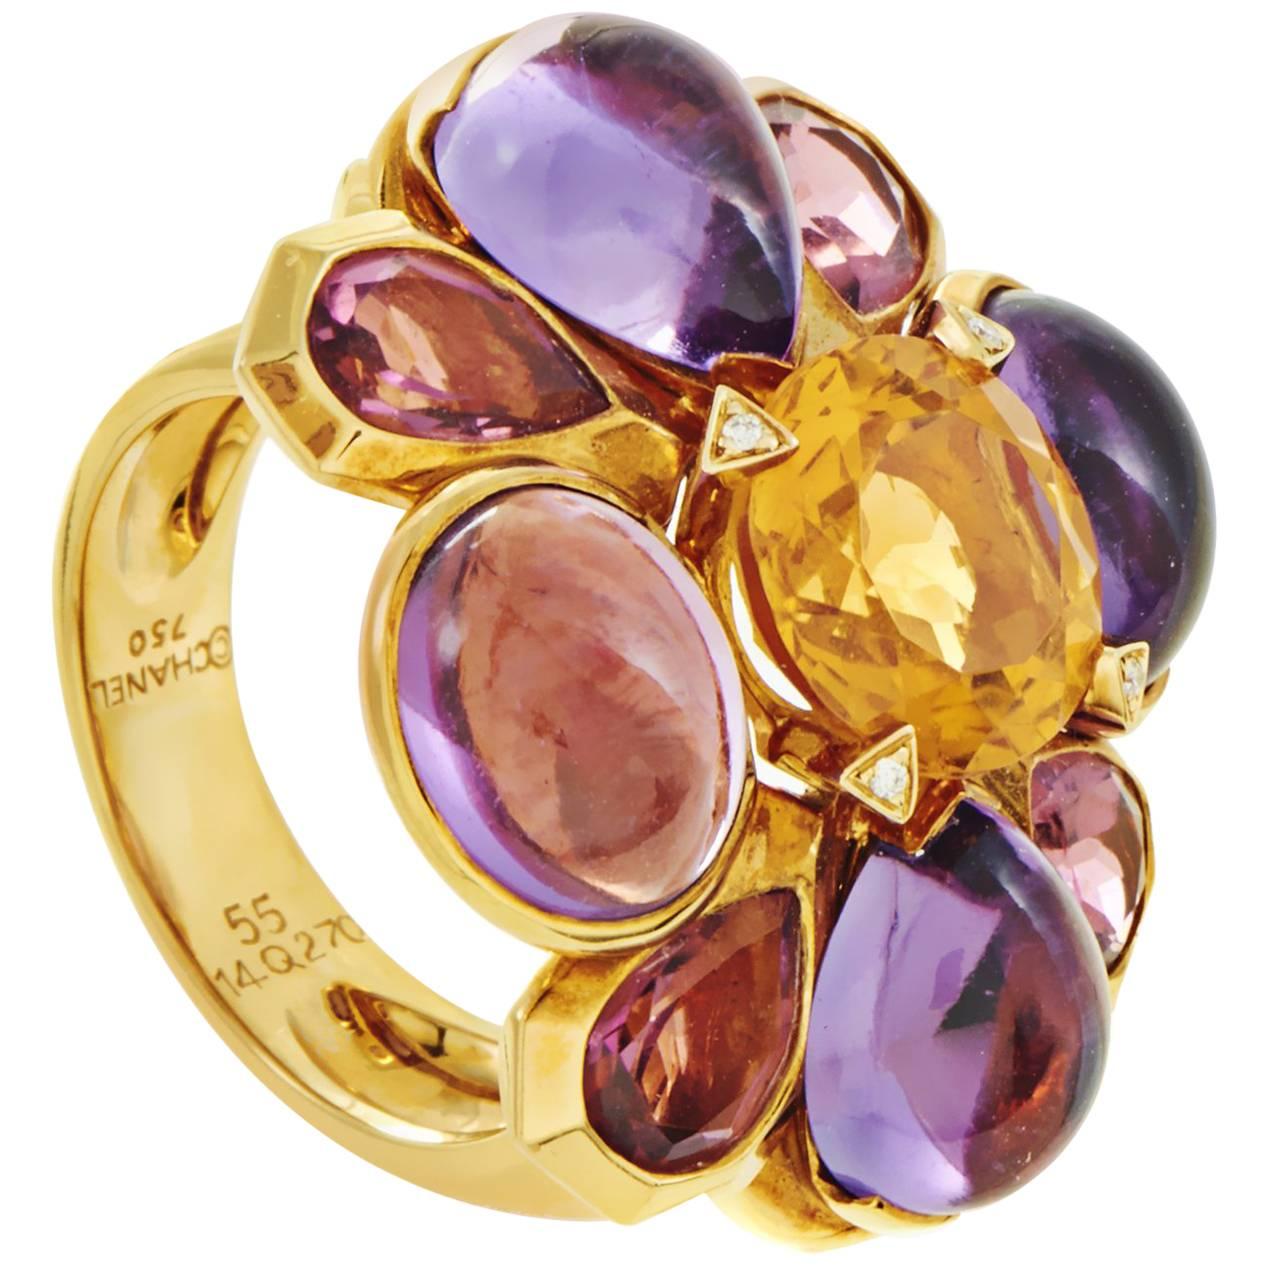 Chanel San Marco Women's 18 Karat Yellow Gold Multi-Gemstone Cocktail Ring